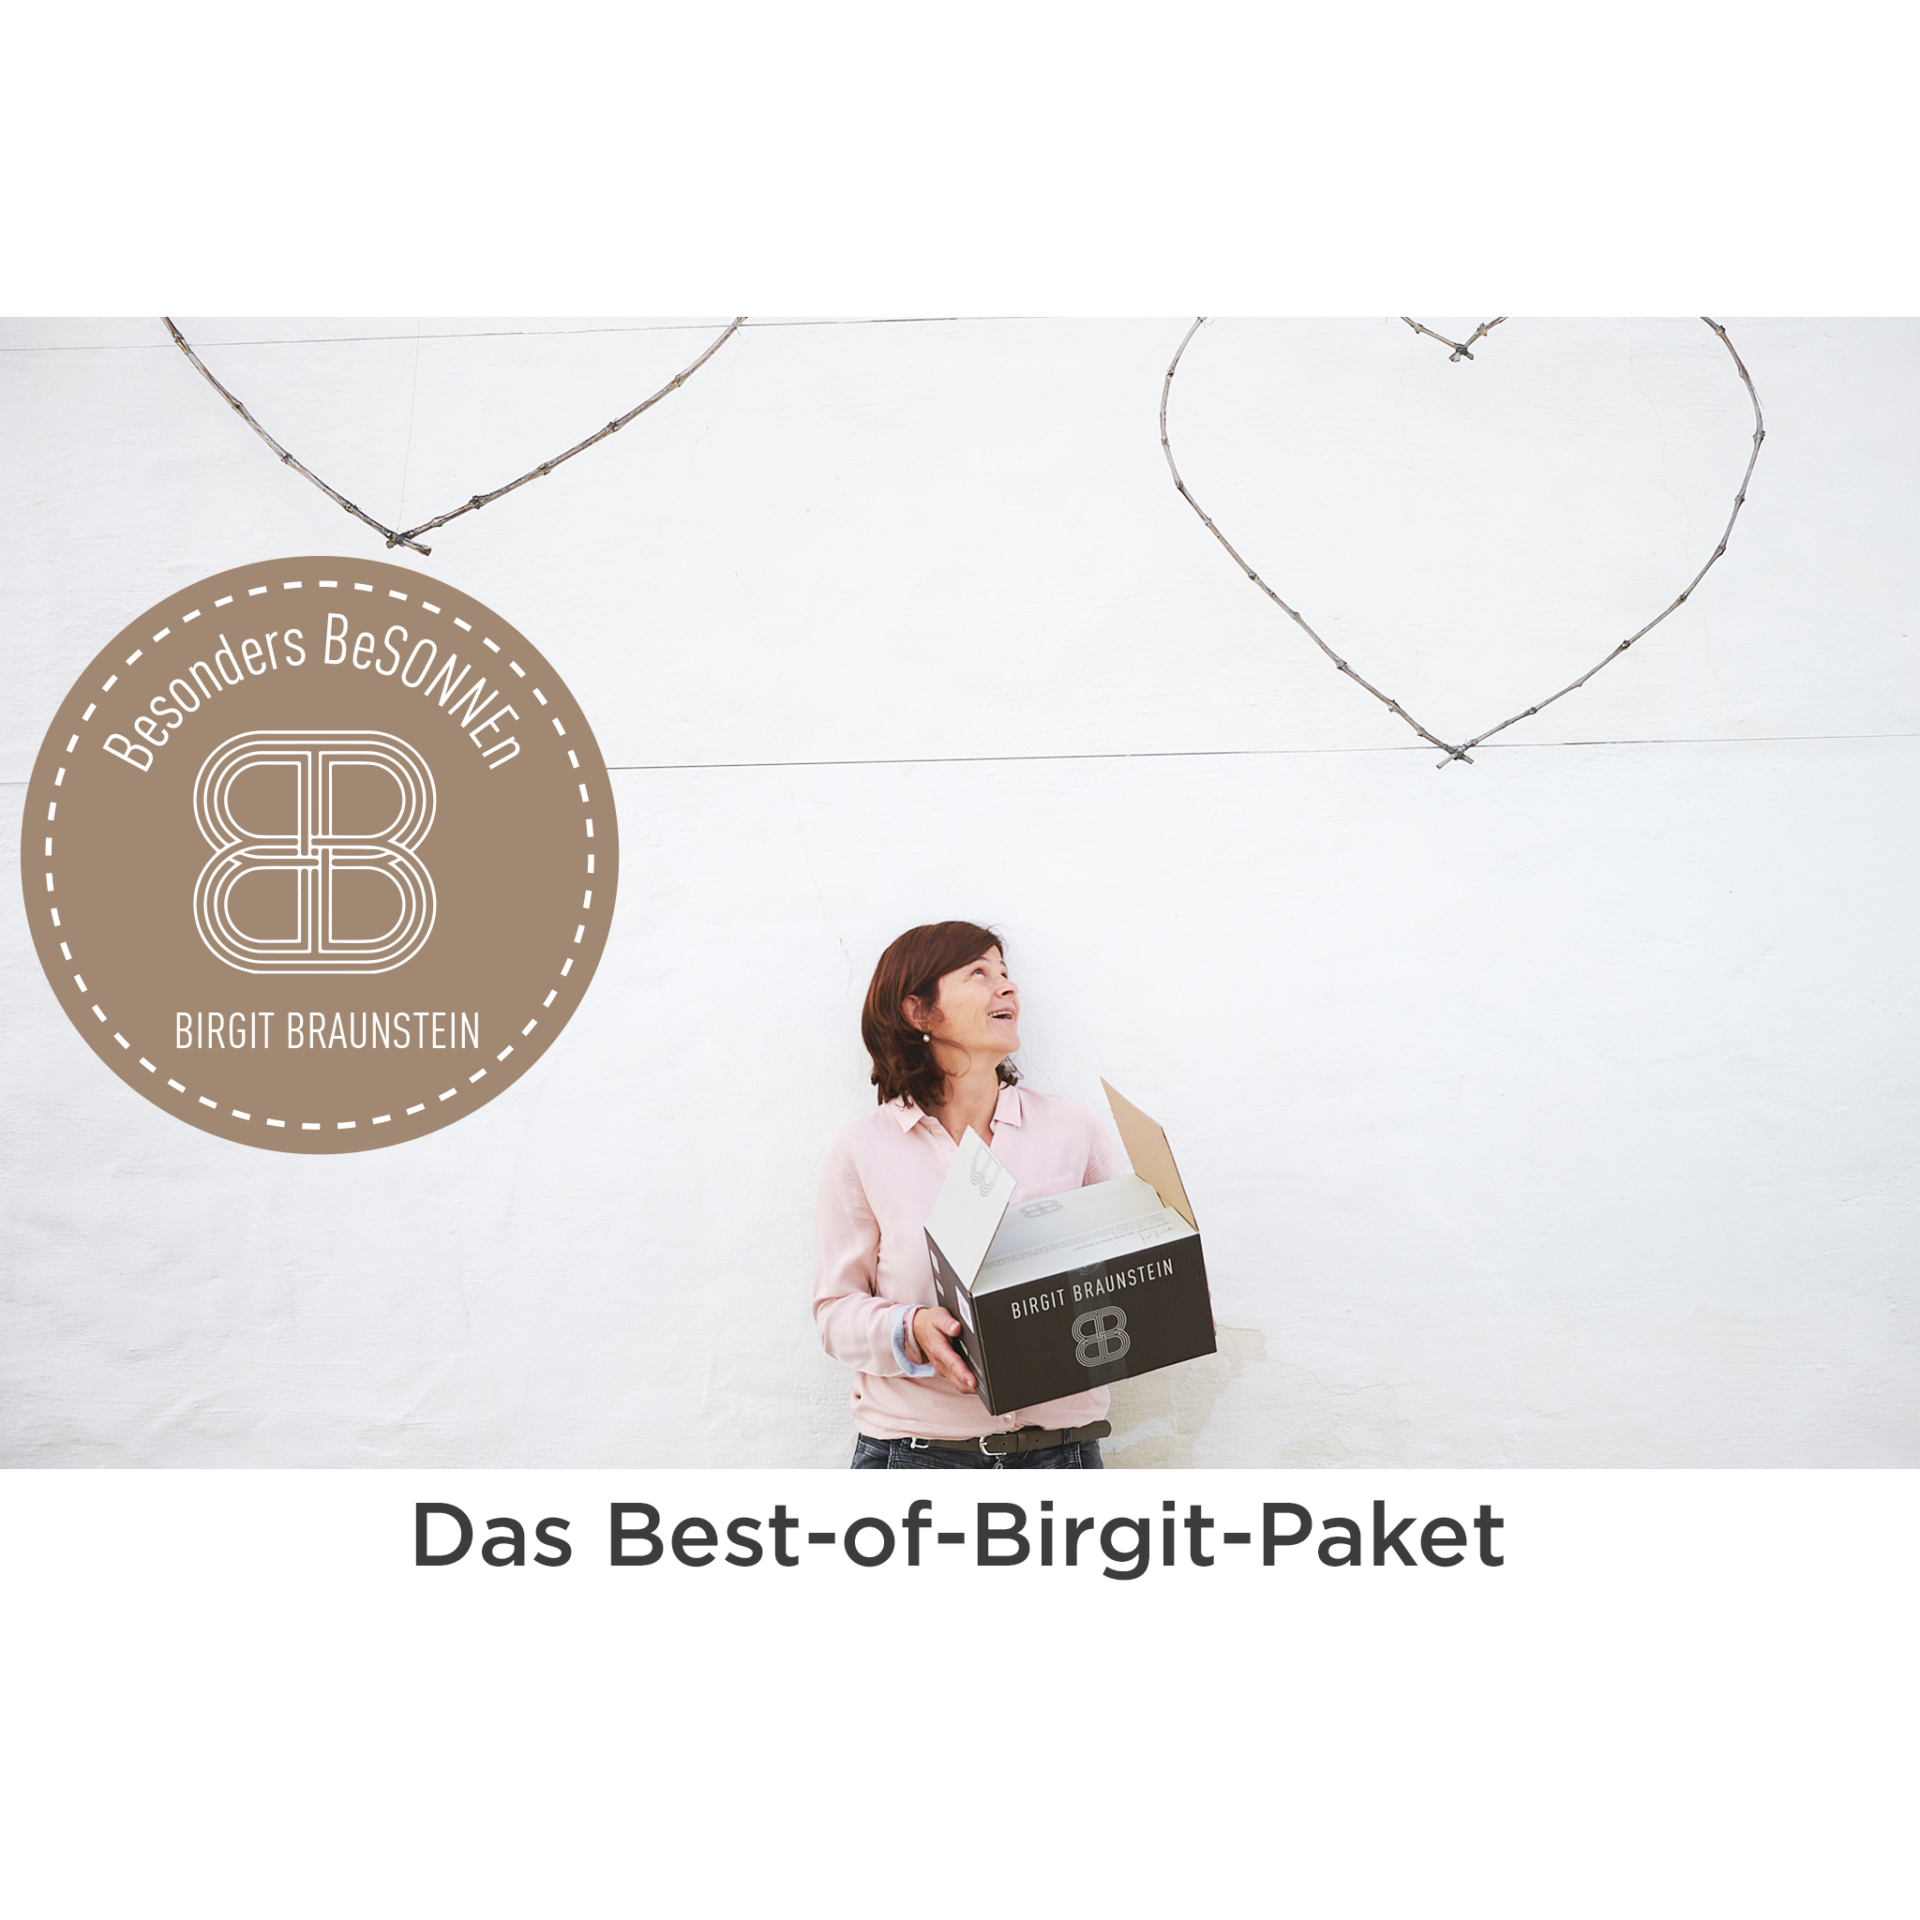 Best-of-Birgit-Paket